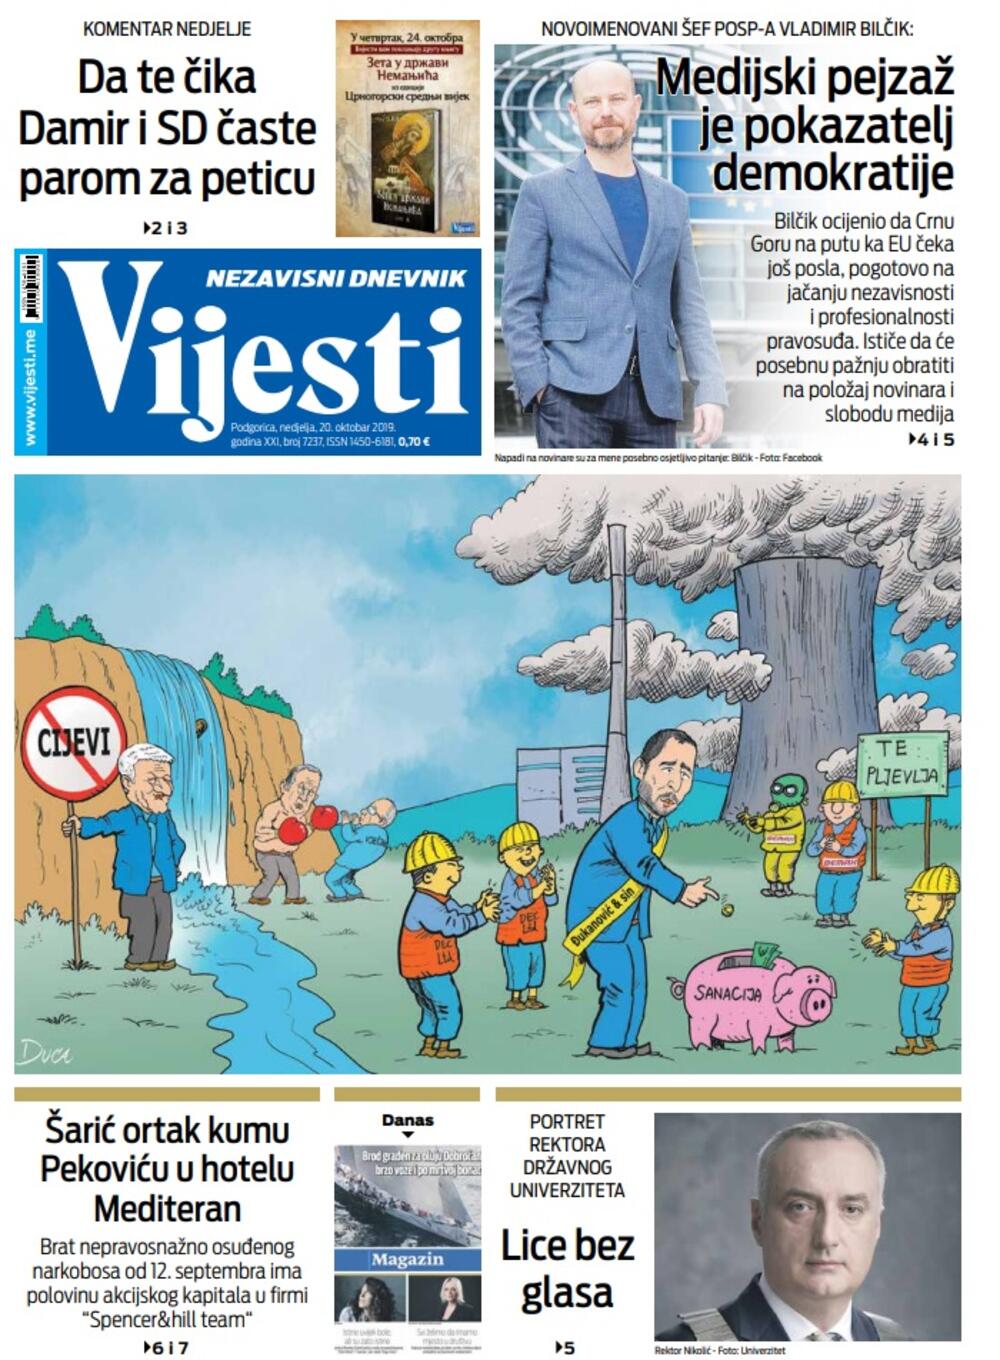 Naslovna strana "Vijesti" za 20. oktobar 2019., Foto: Vijesti